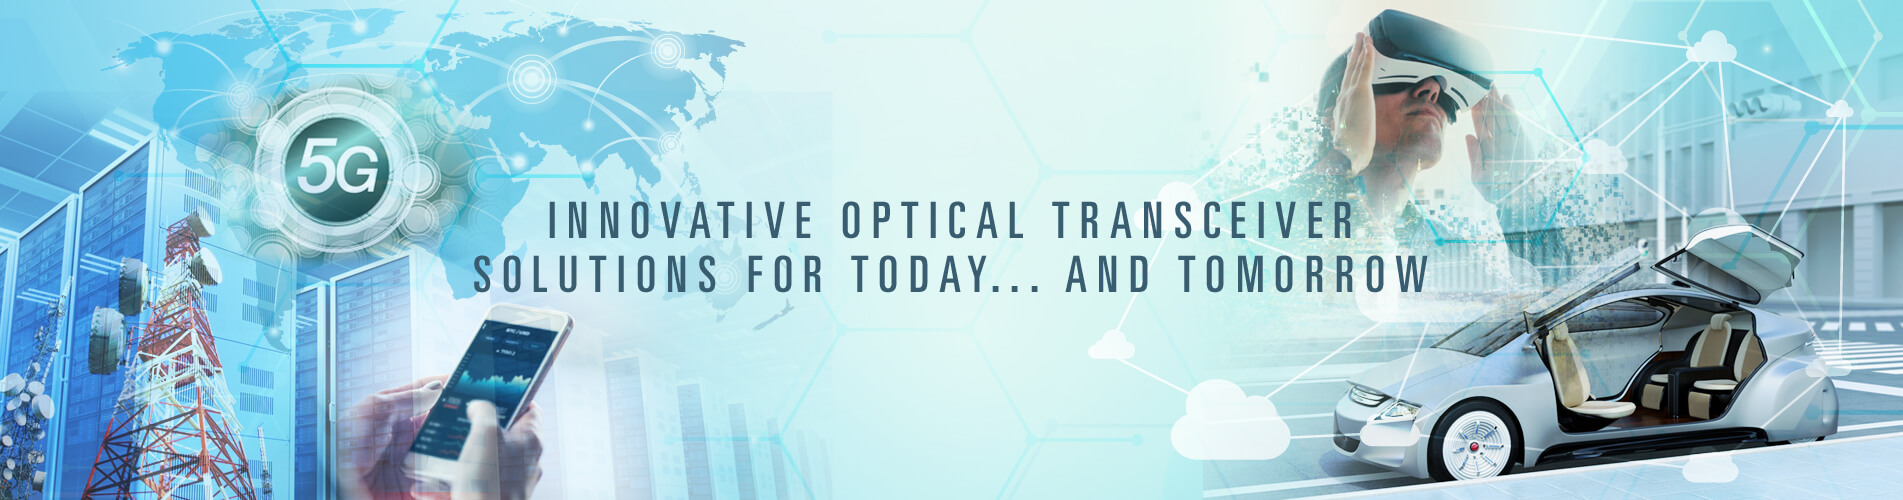 optical transceiver odm